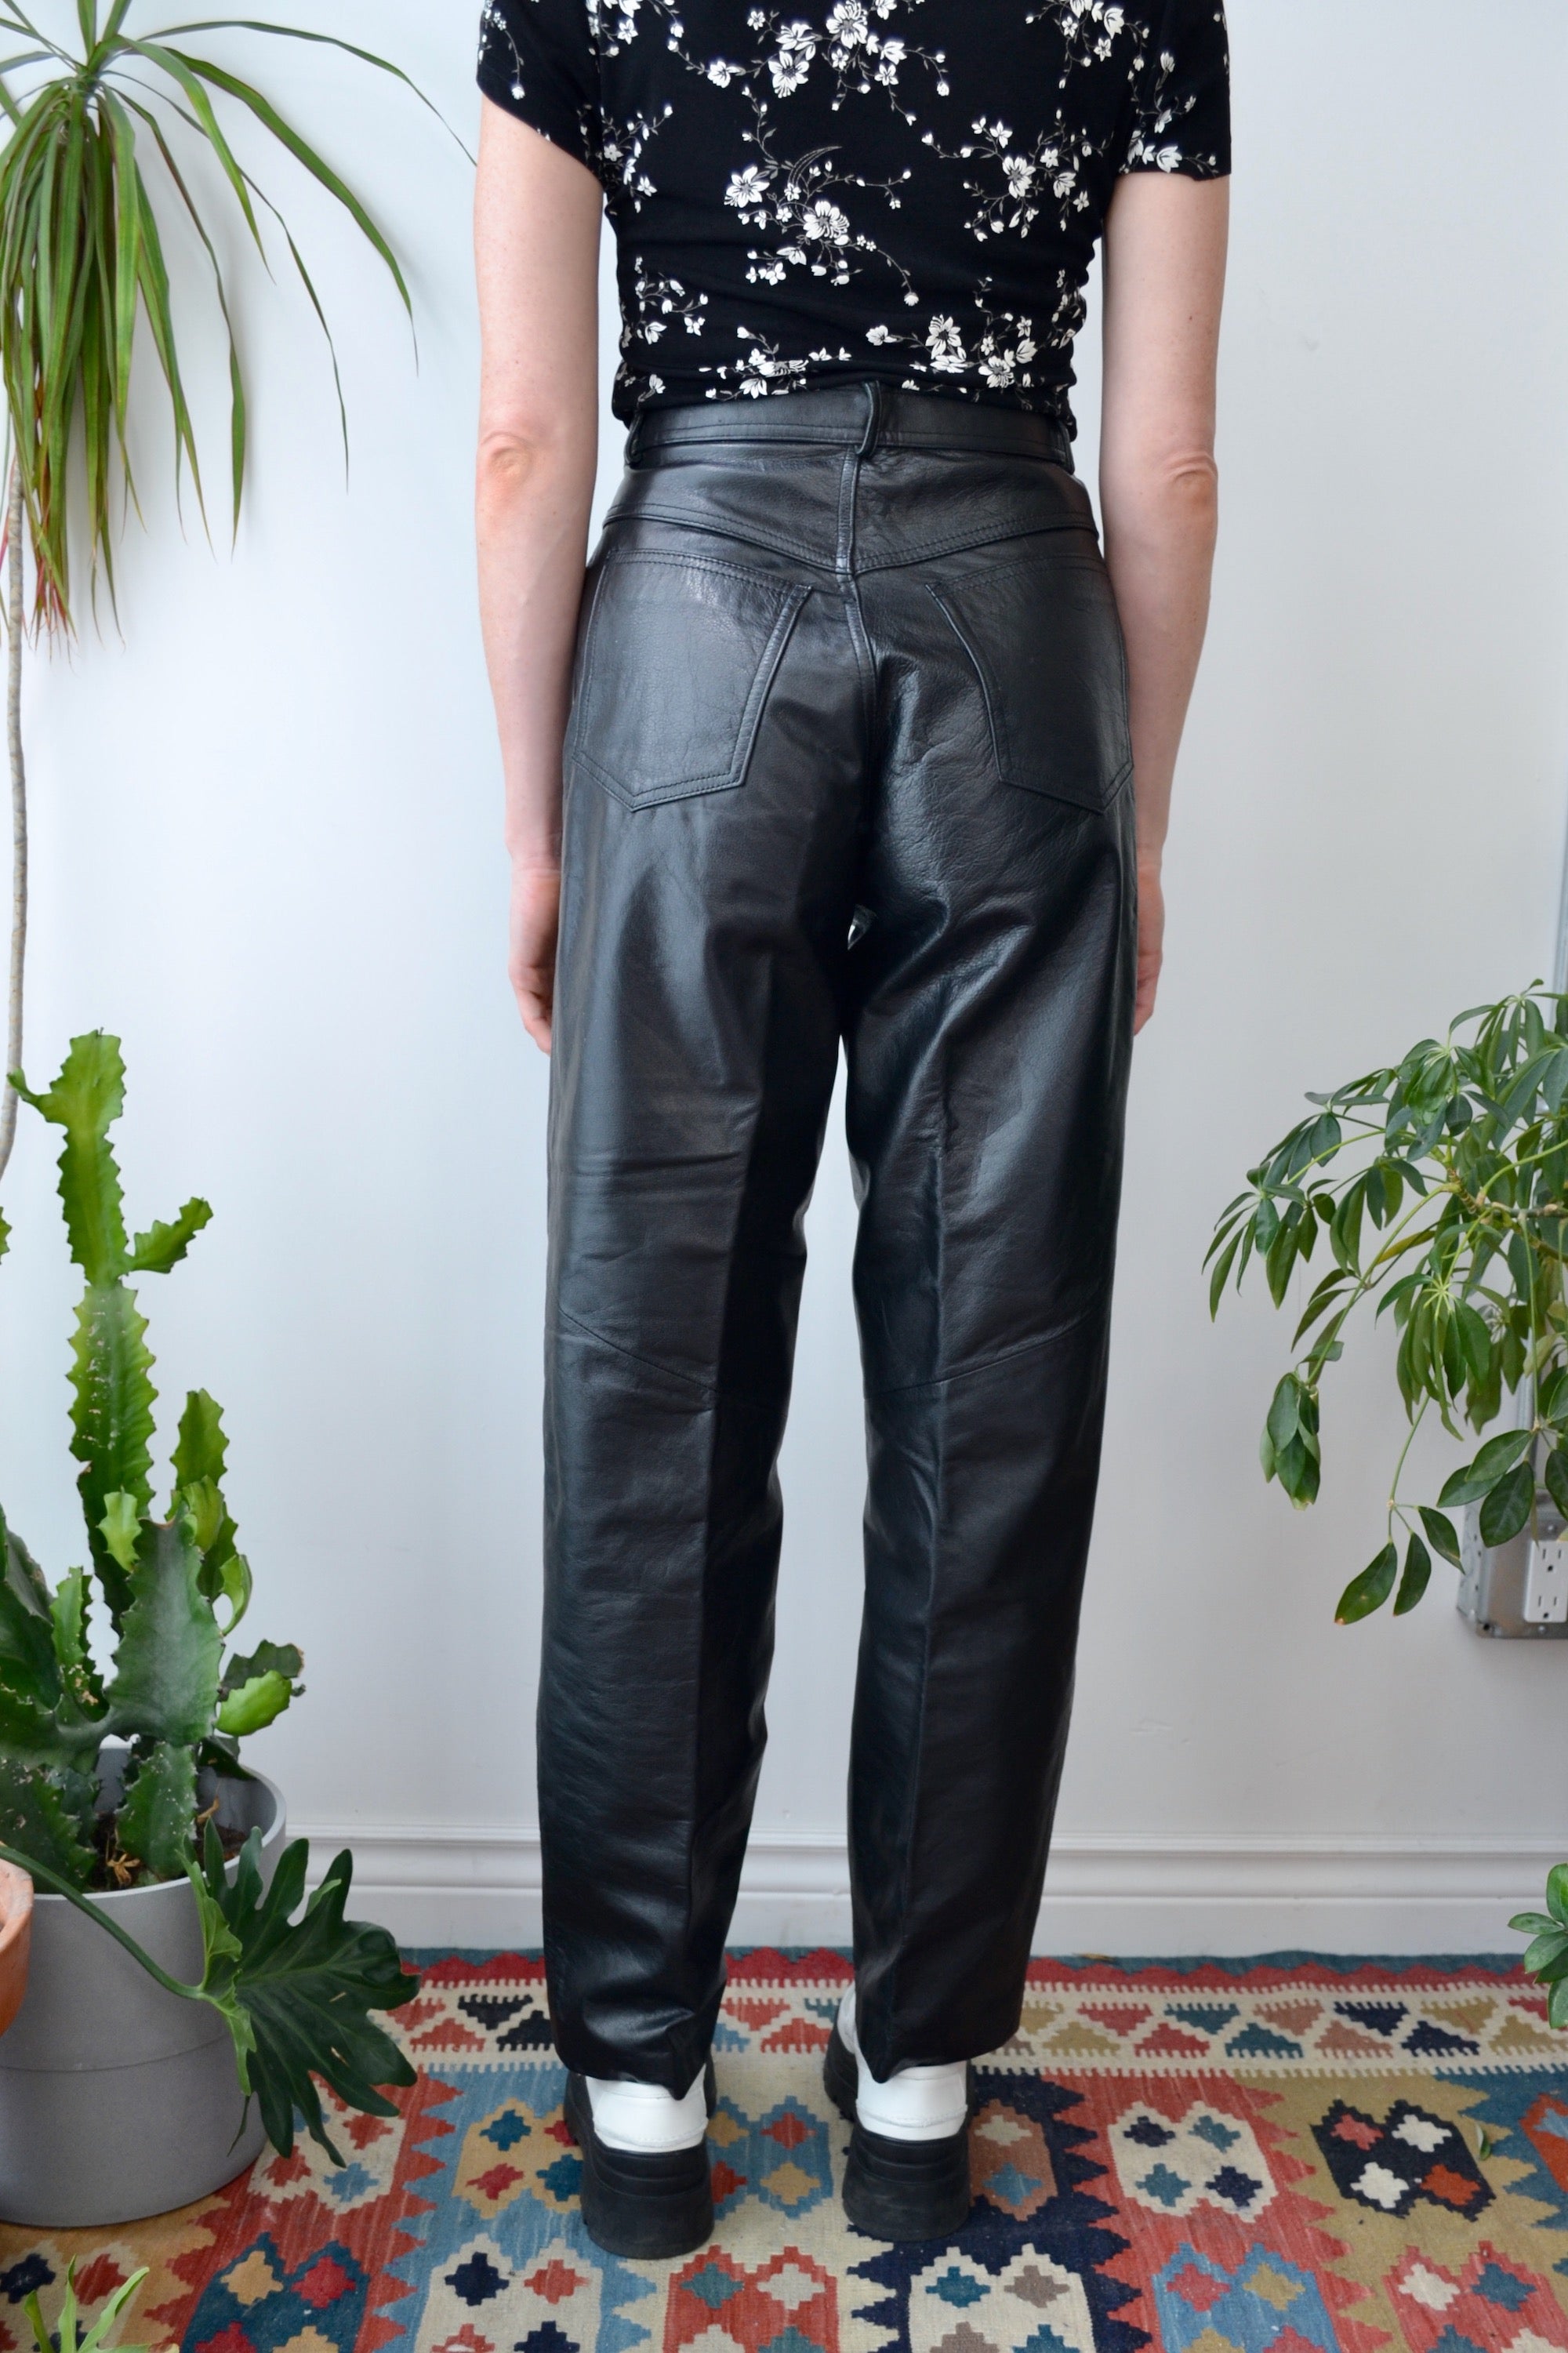 Danier Leather Pants